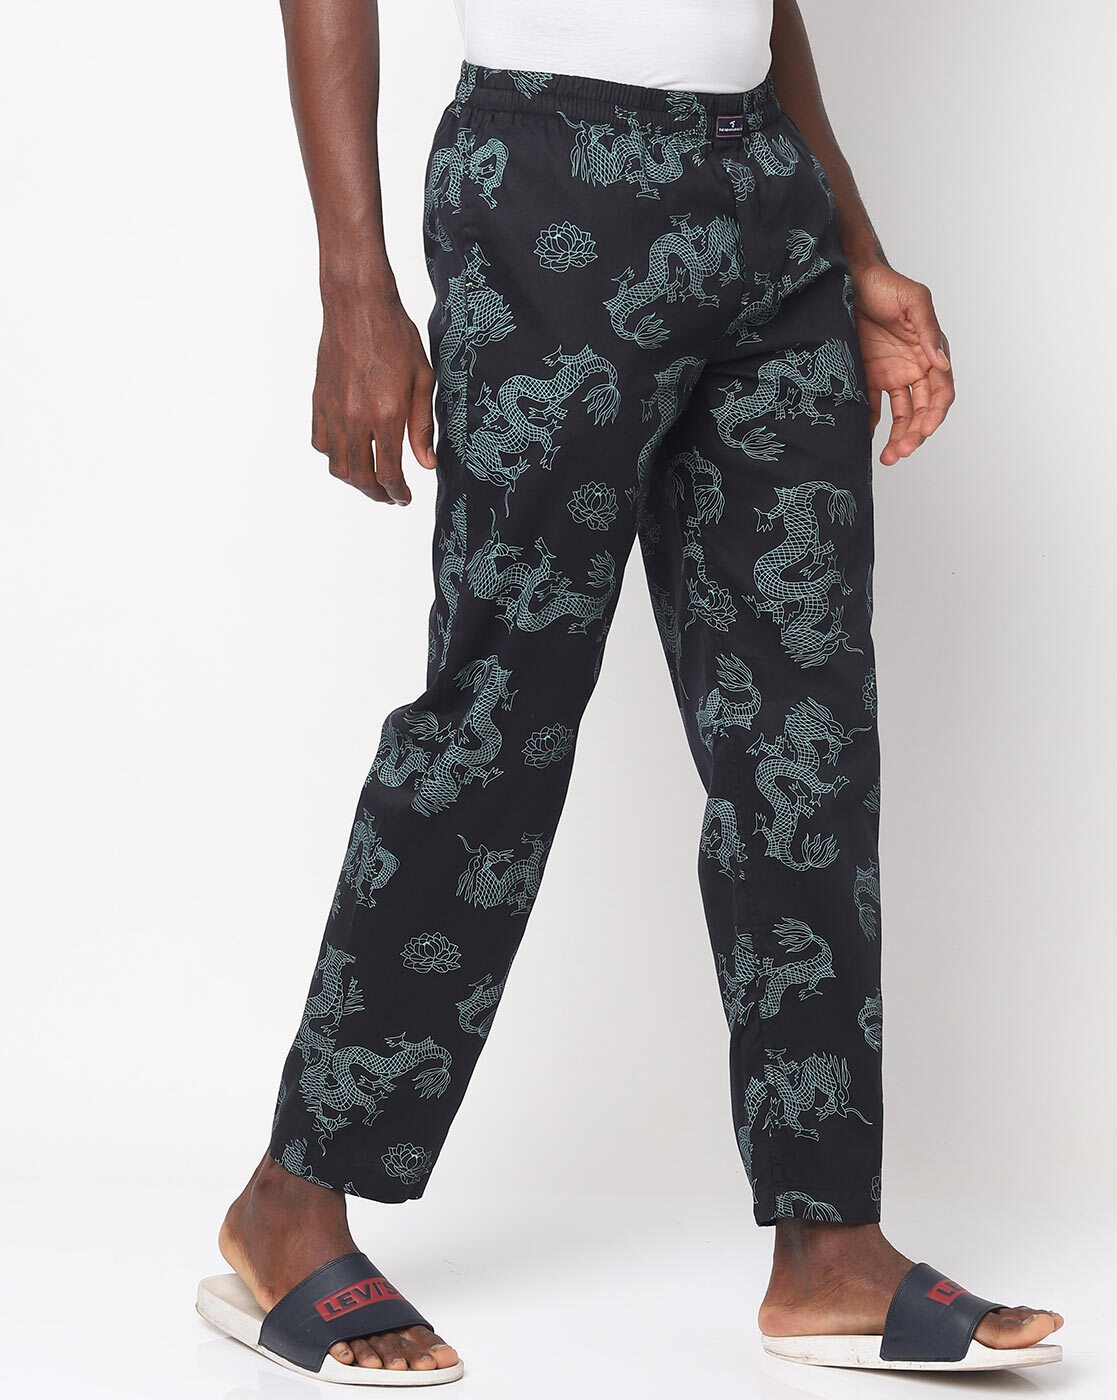 Buy Blue Pyjamas  Shorts for Women by VAN HEUSEN Online  Ajiocom